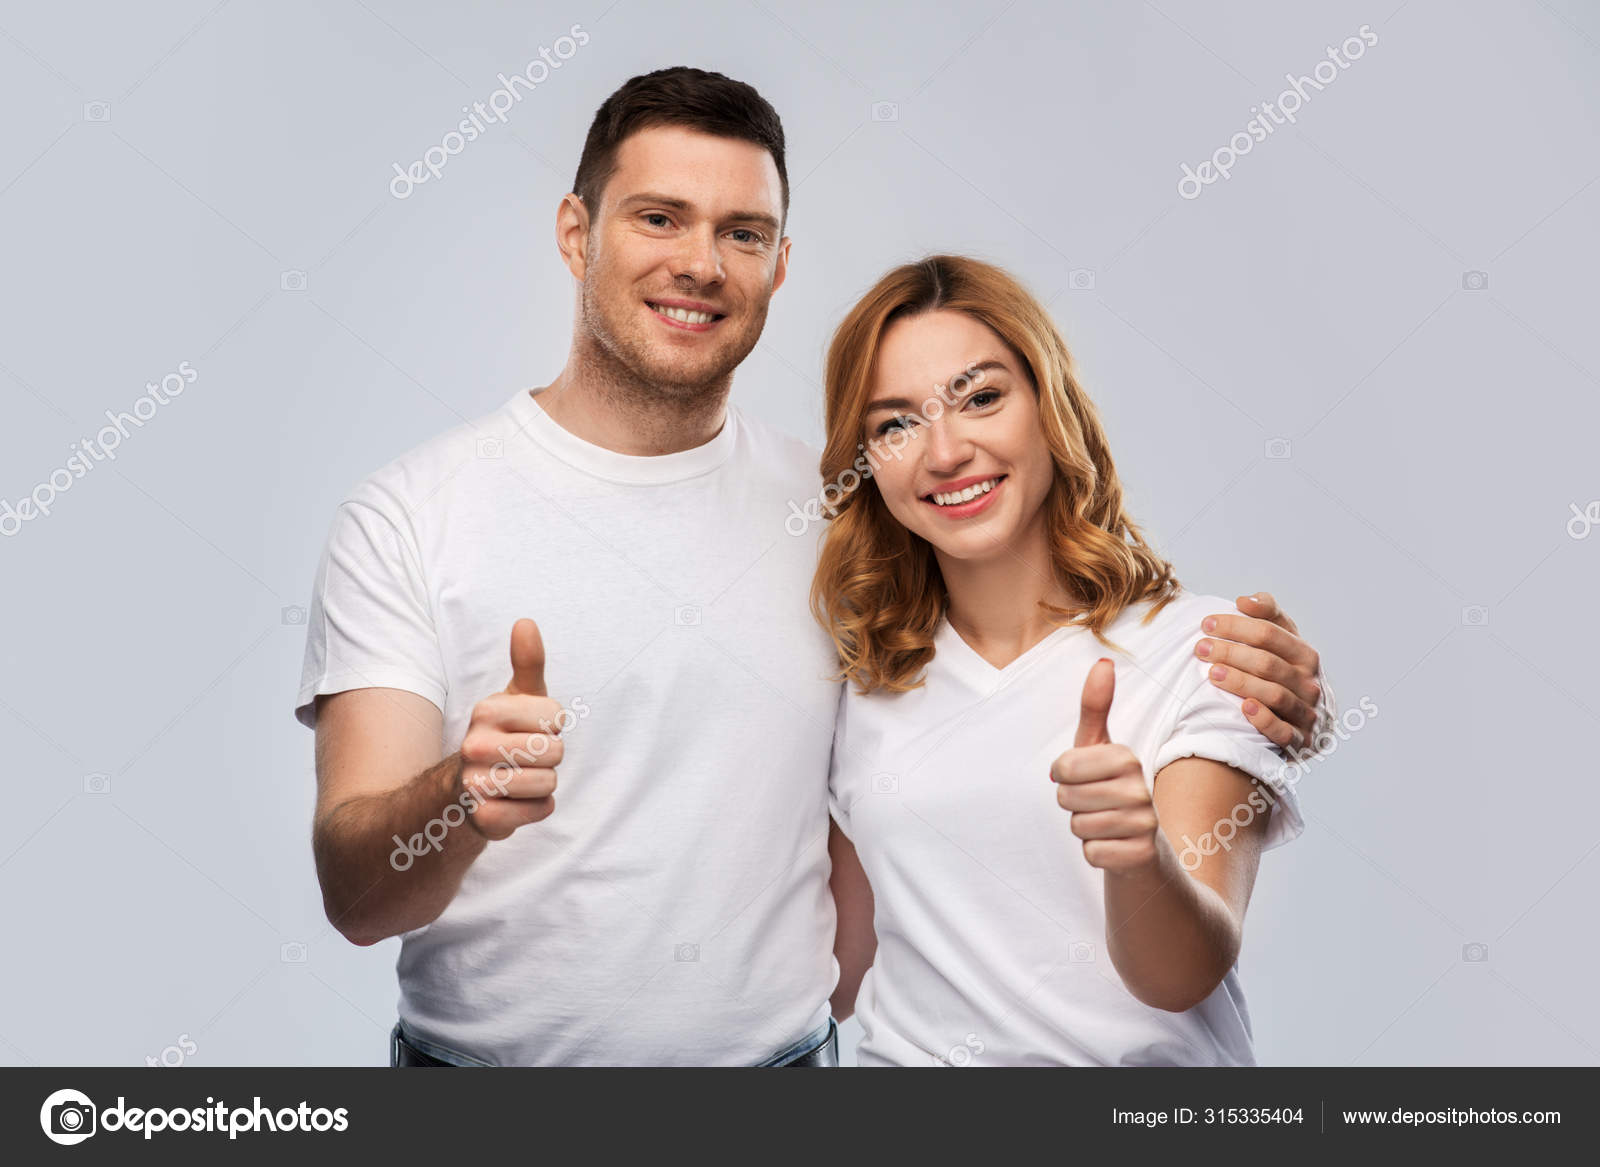 fax sandhed Blåt mærke Portræt af lykkeligt par i hvide t-shirts — Stock-foto © Syda_Productions  #315335404